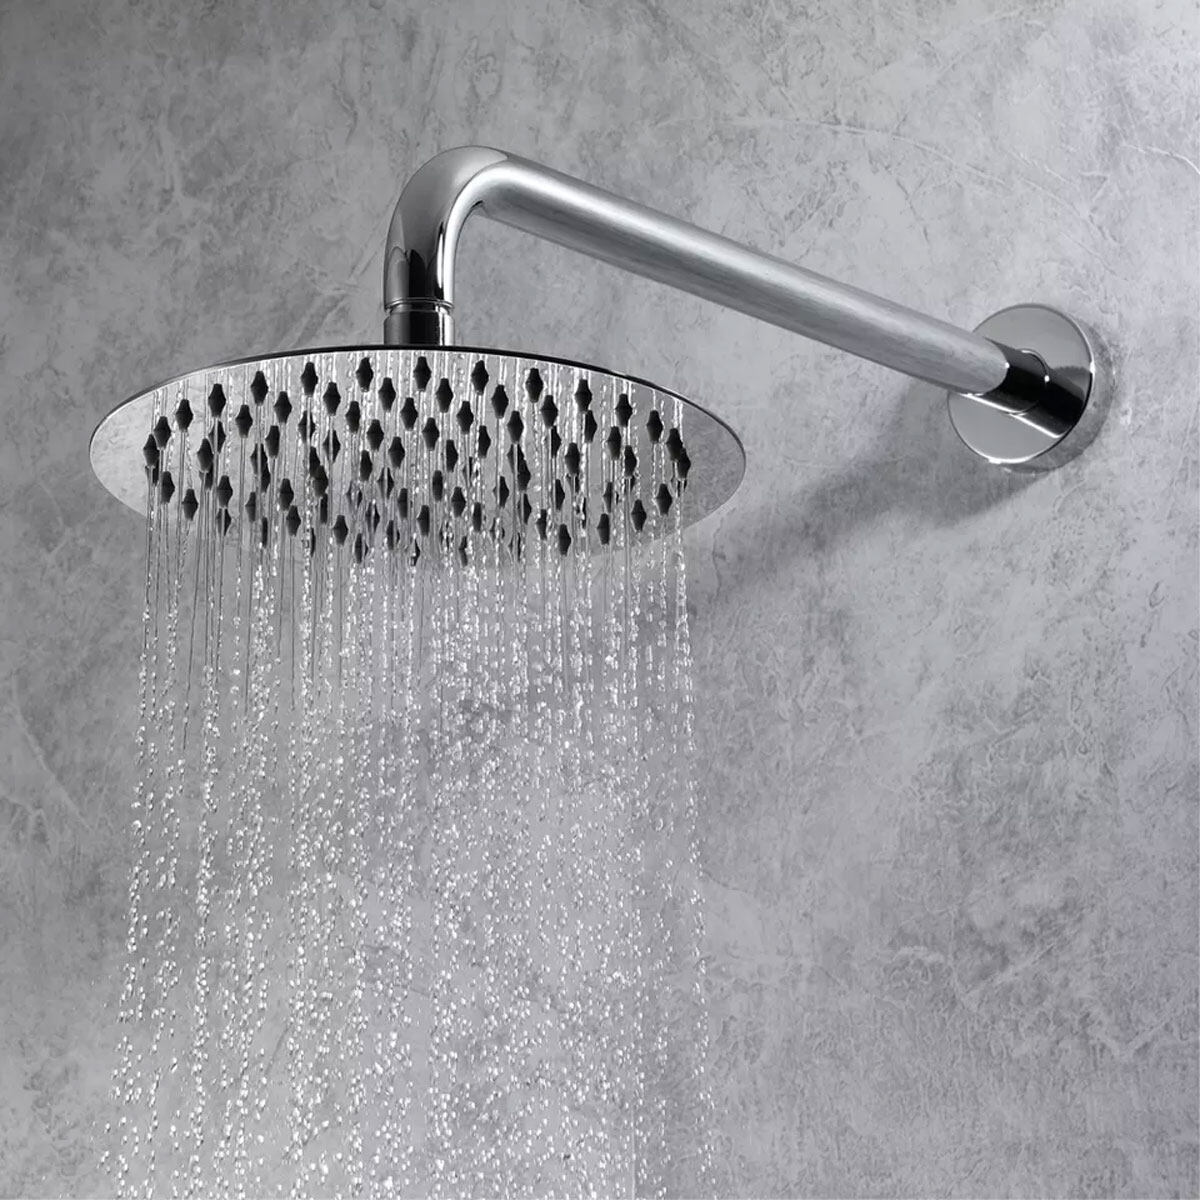 wholesale shower faucets, shower faucet manufacturers, shower mixer faucet, shower faucet design ideas, mixer faucet shower